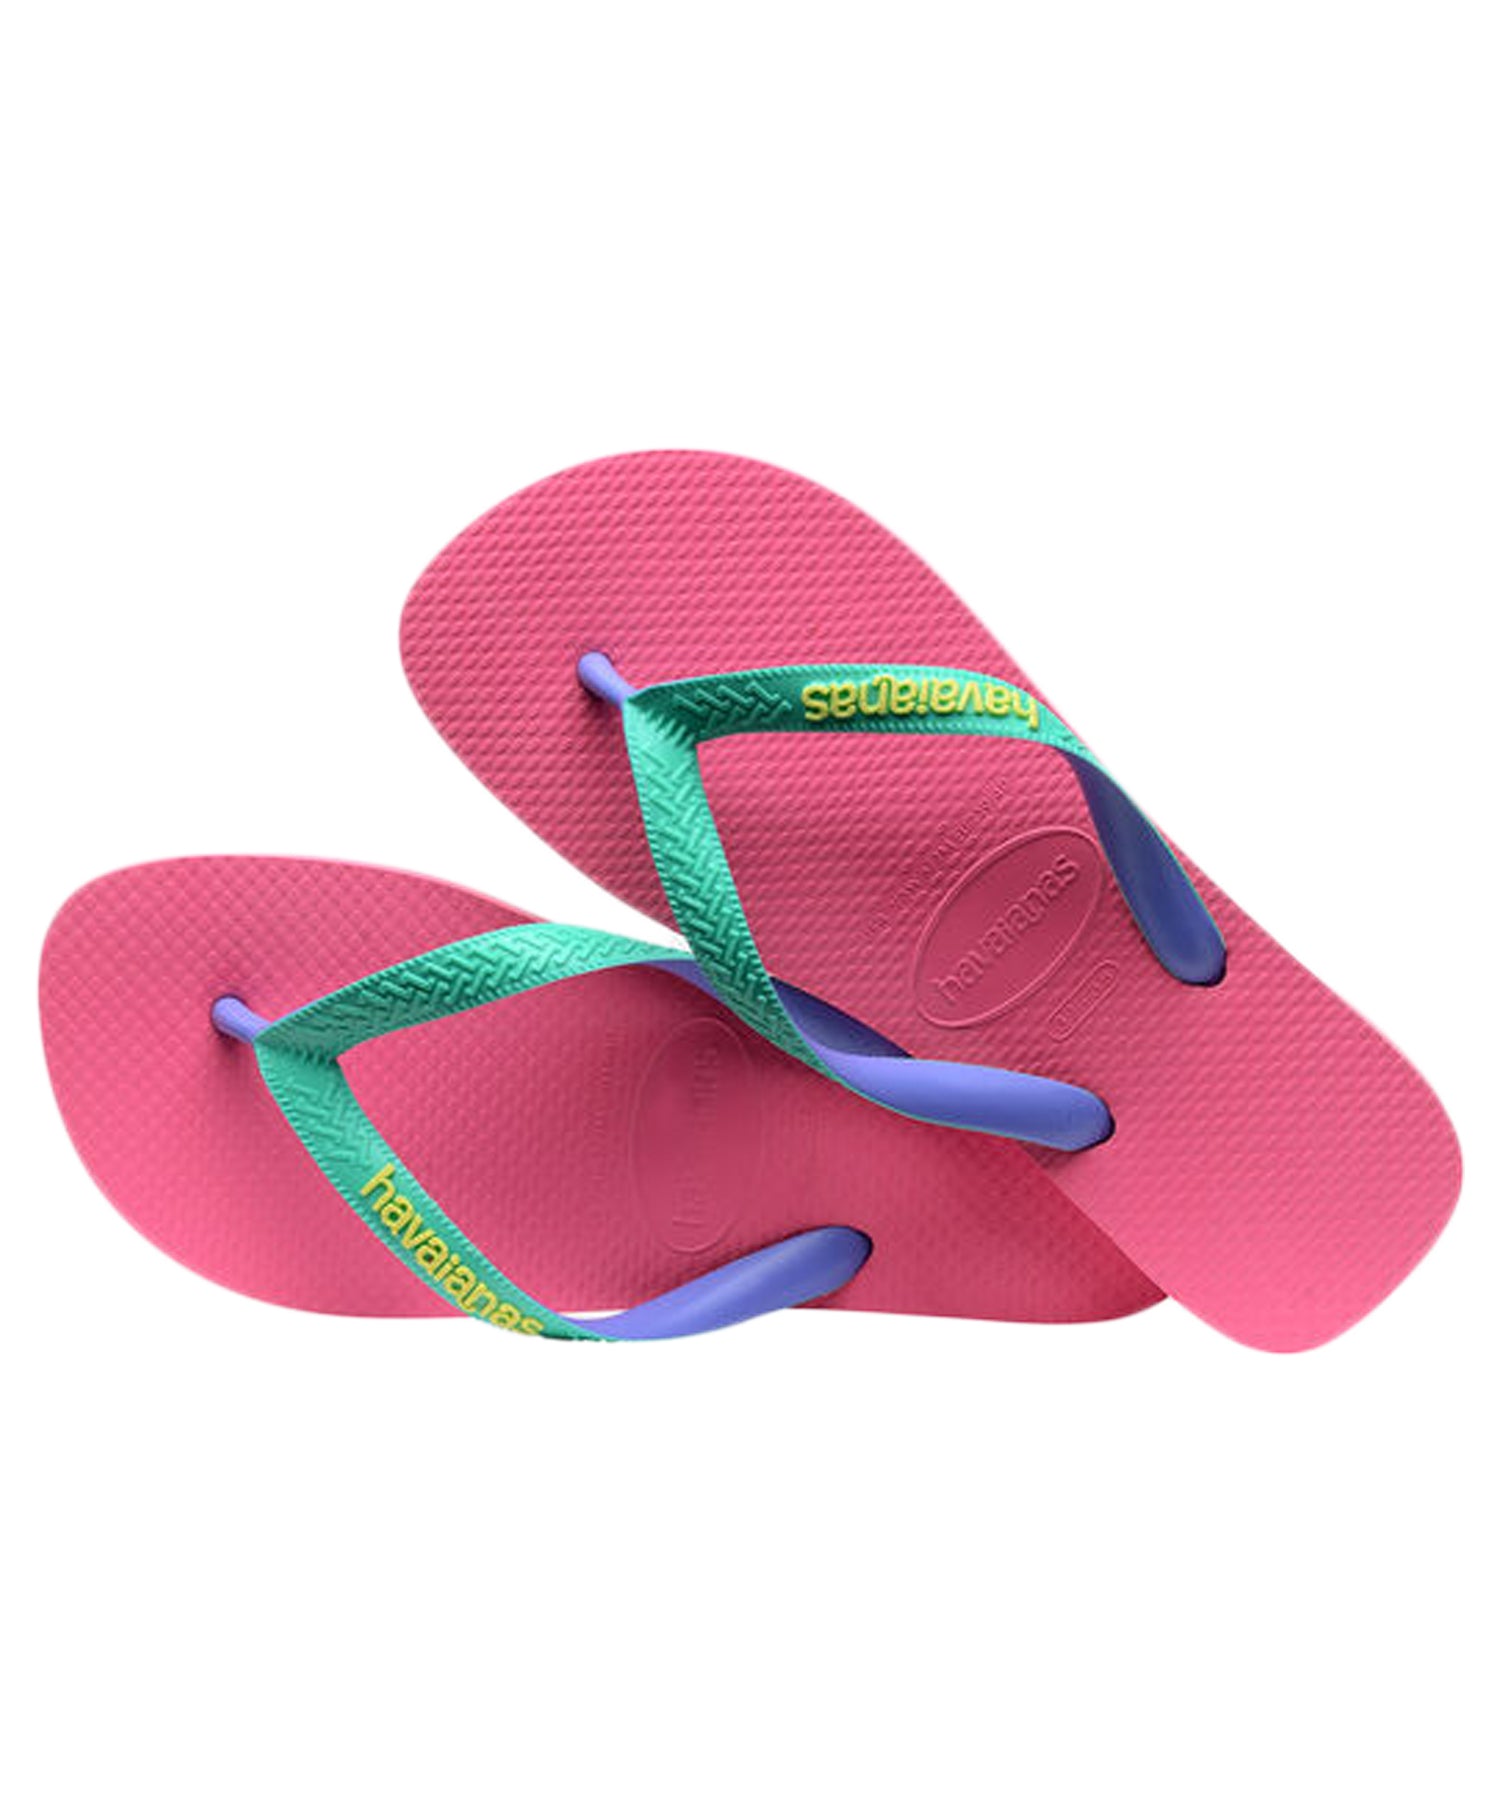 havaianas-chanclas-top-mix-color-rosa-ciber-diseño-atemporal-hechas-en-brasil-cómodas-y-frescas.